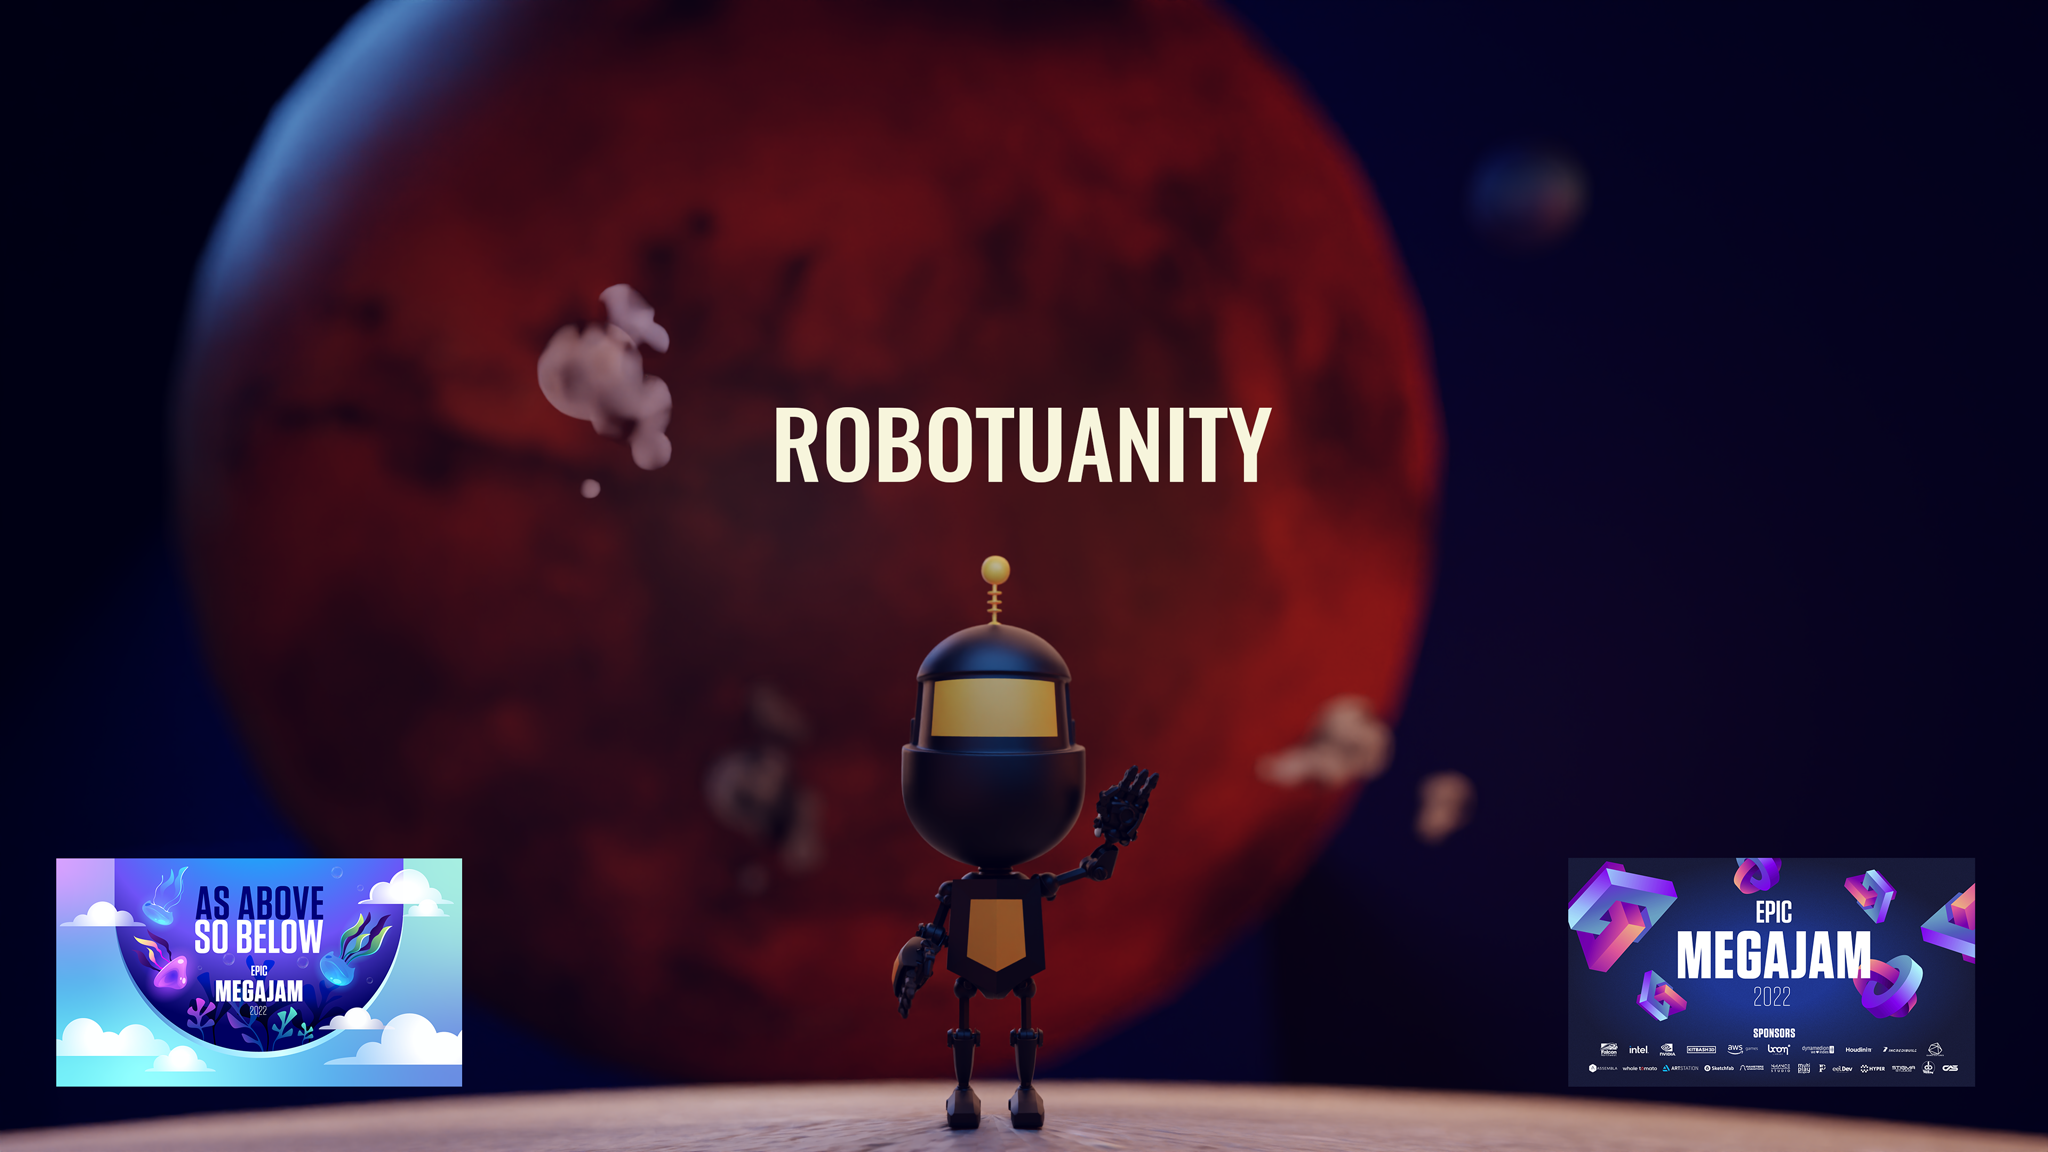 Robotuanity